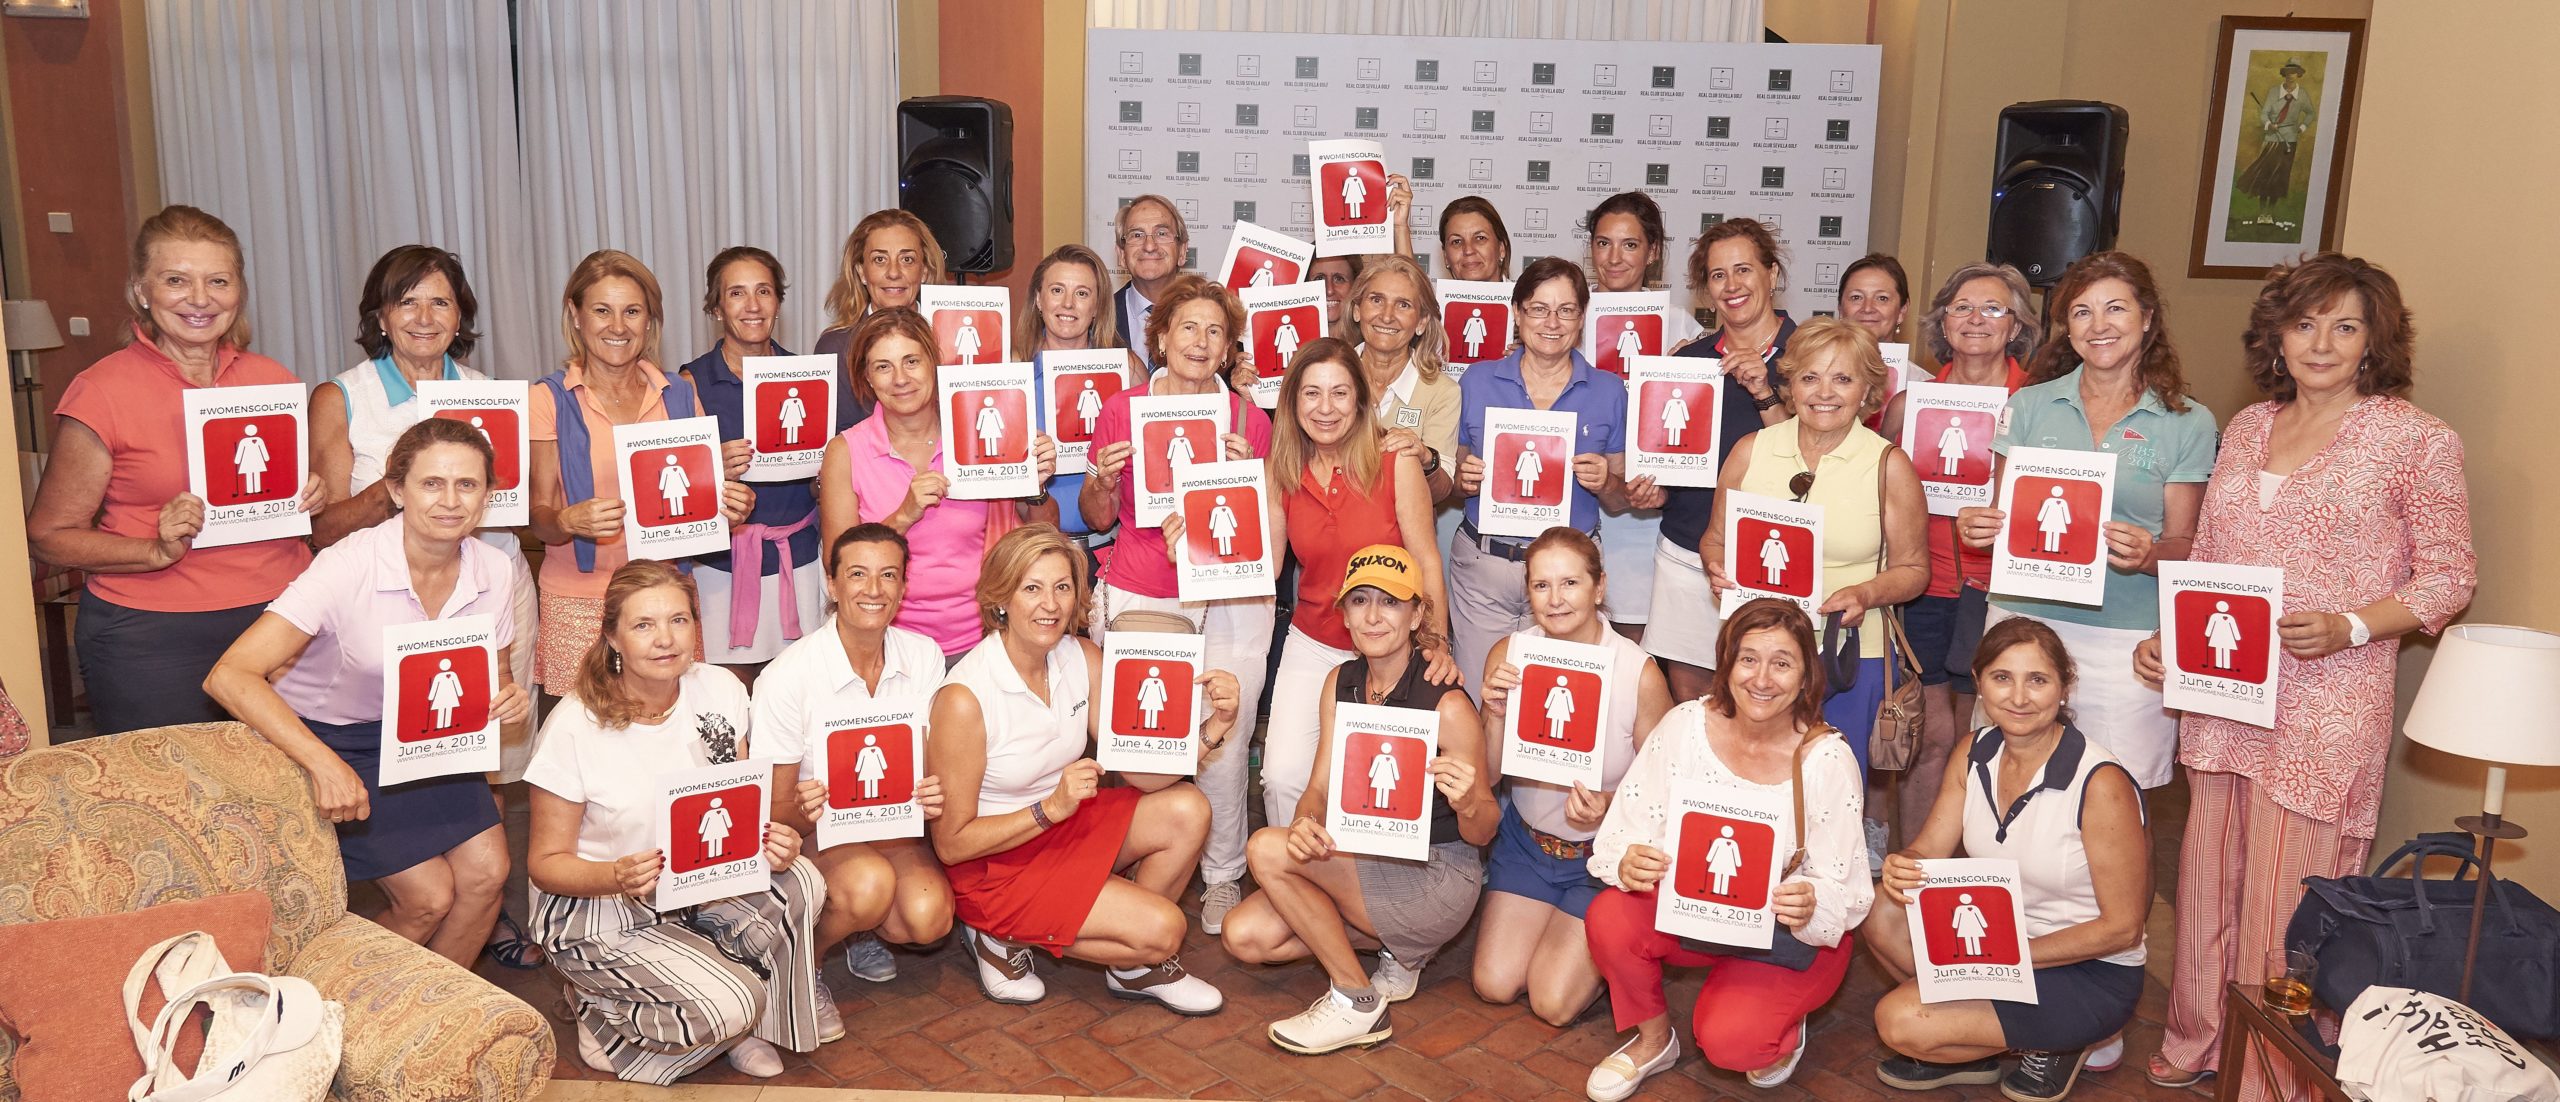 El Real Club Sevilla Golf celebra la tercera edición del torneo femenino el “Día Internacional de la Mujer Golfista” #WomensGolfDay